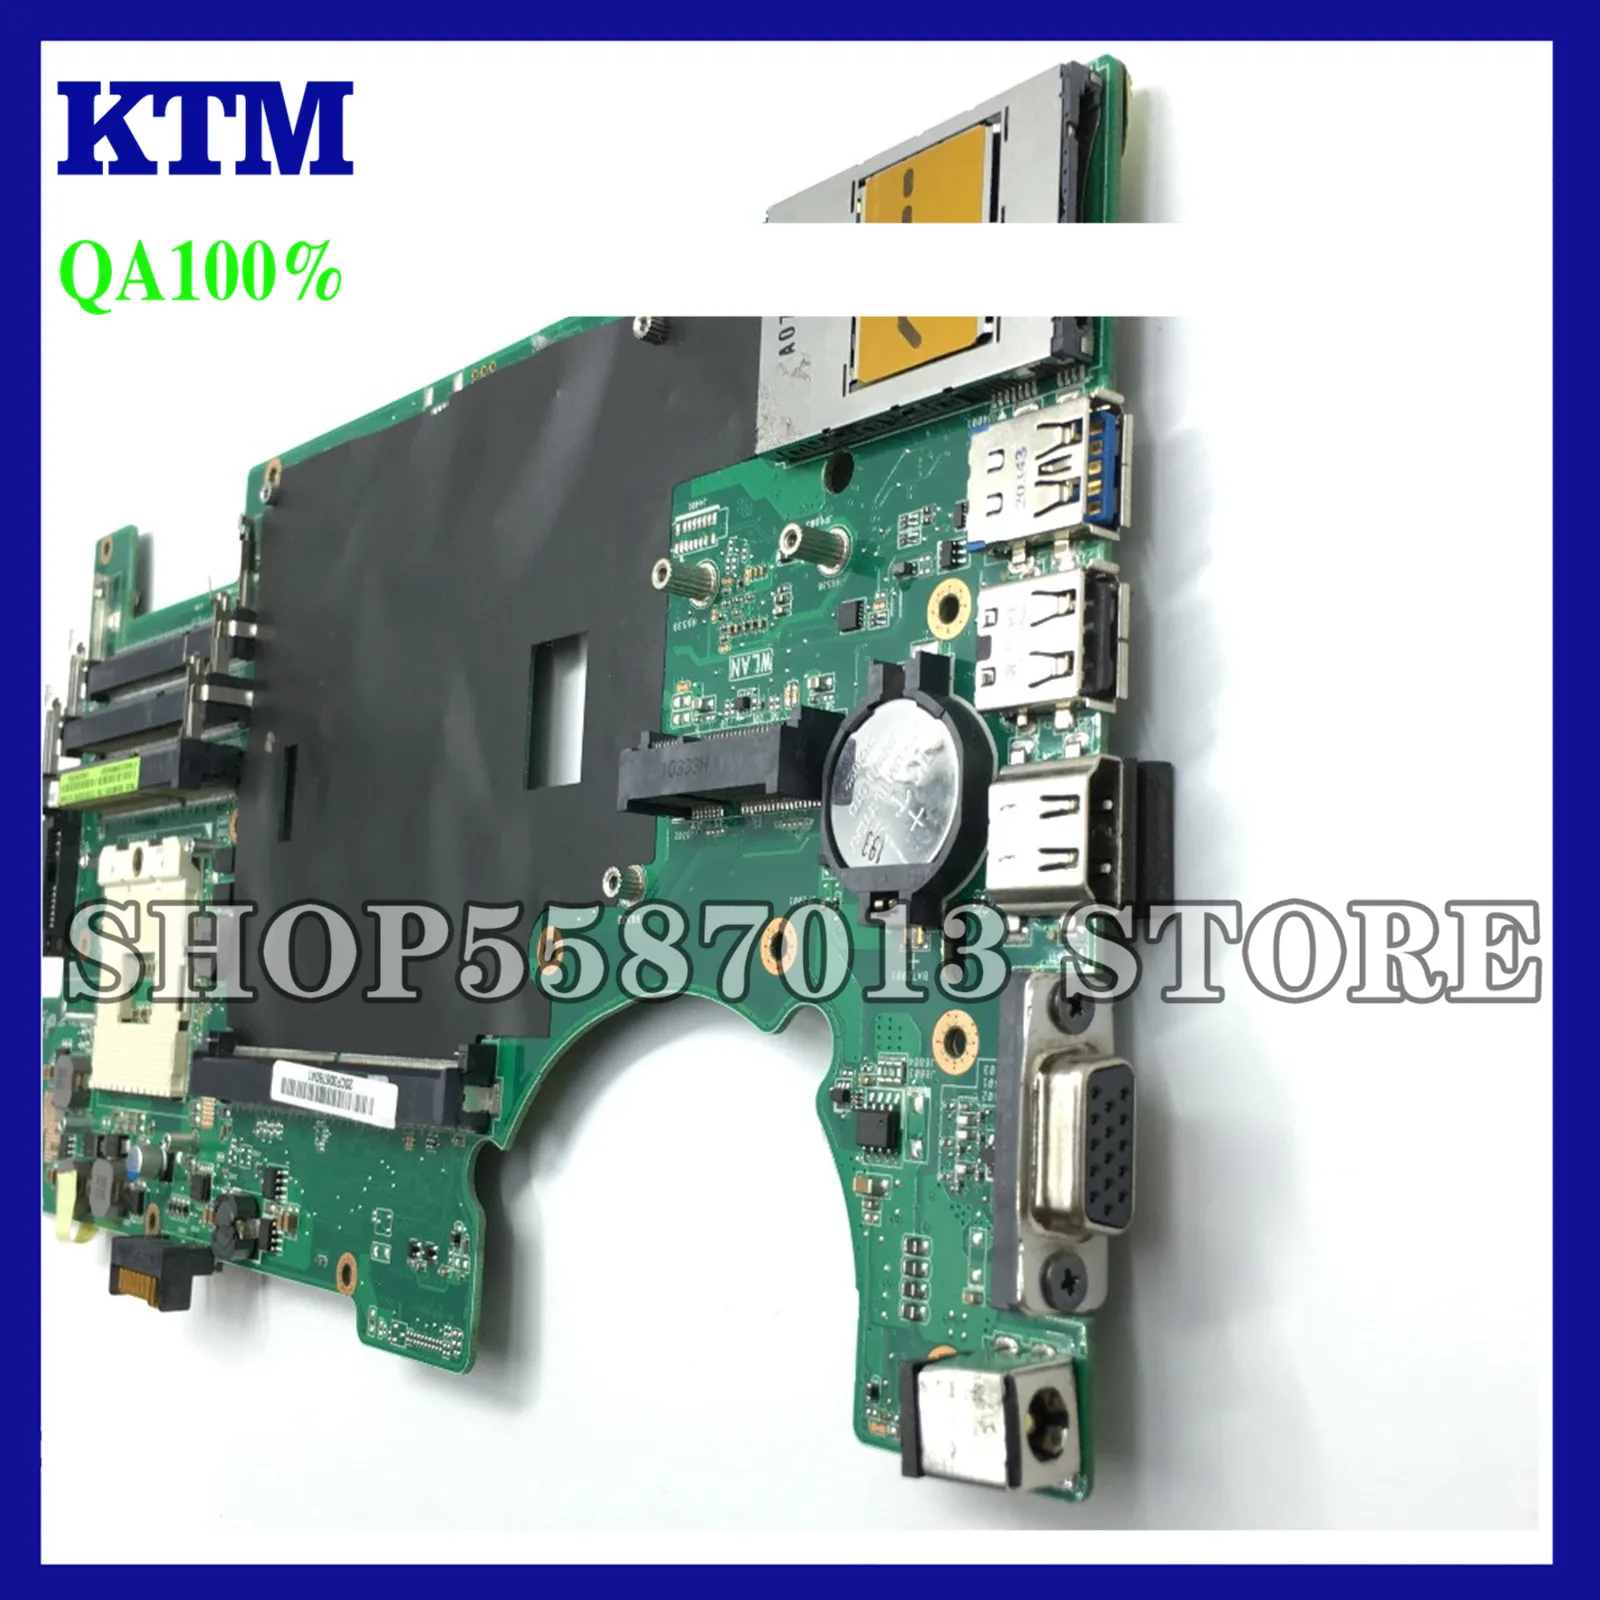 

KEFU G73JW For ASUS G73 G73J G73JW Mainboard 4 Slots RAM Laptop Motherboard 2D Connector REV2.0 Test Work 100%